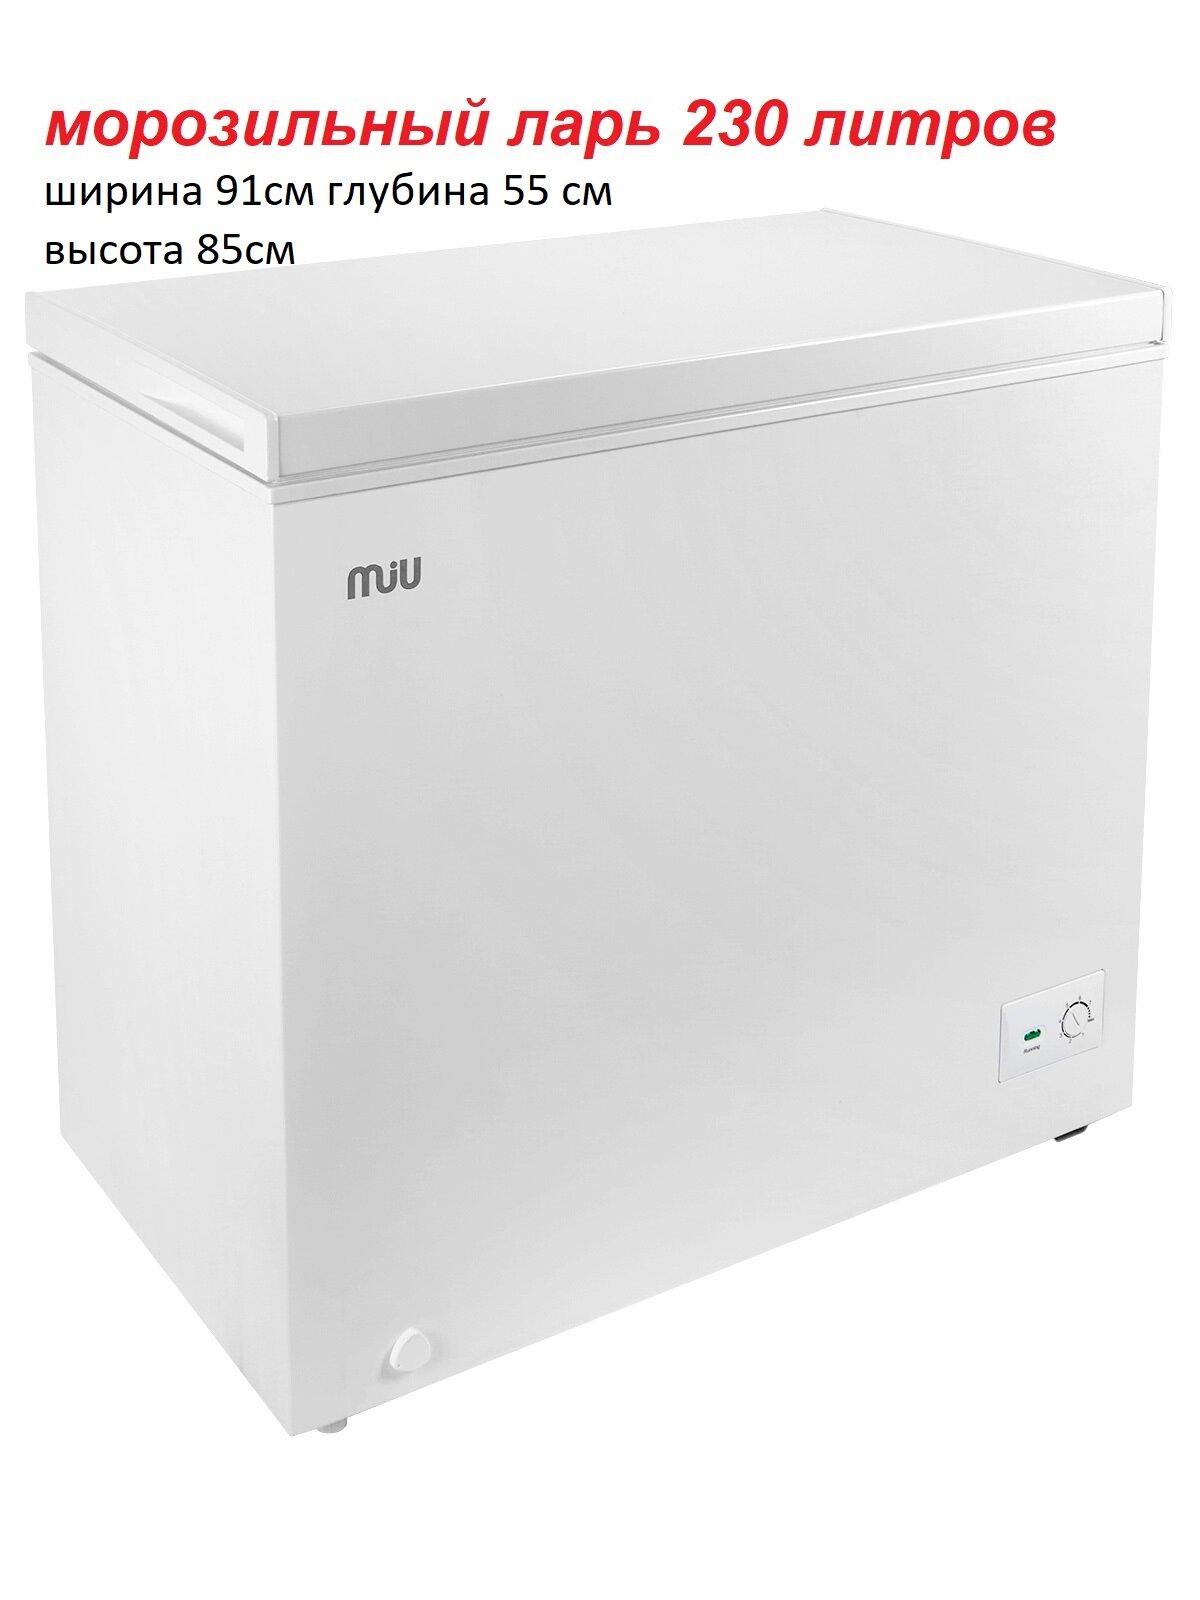 Морозильный ларь MIU MR-250 белый объем 200 литров